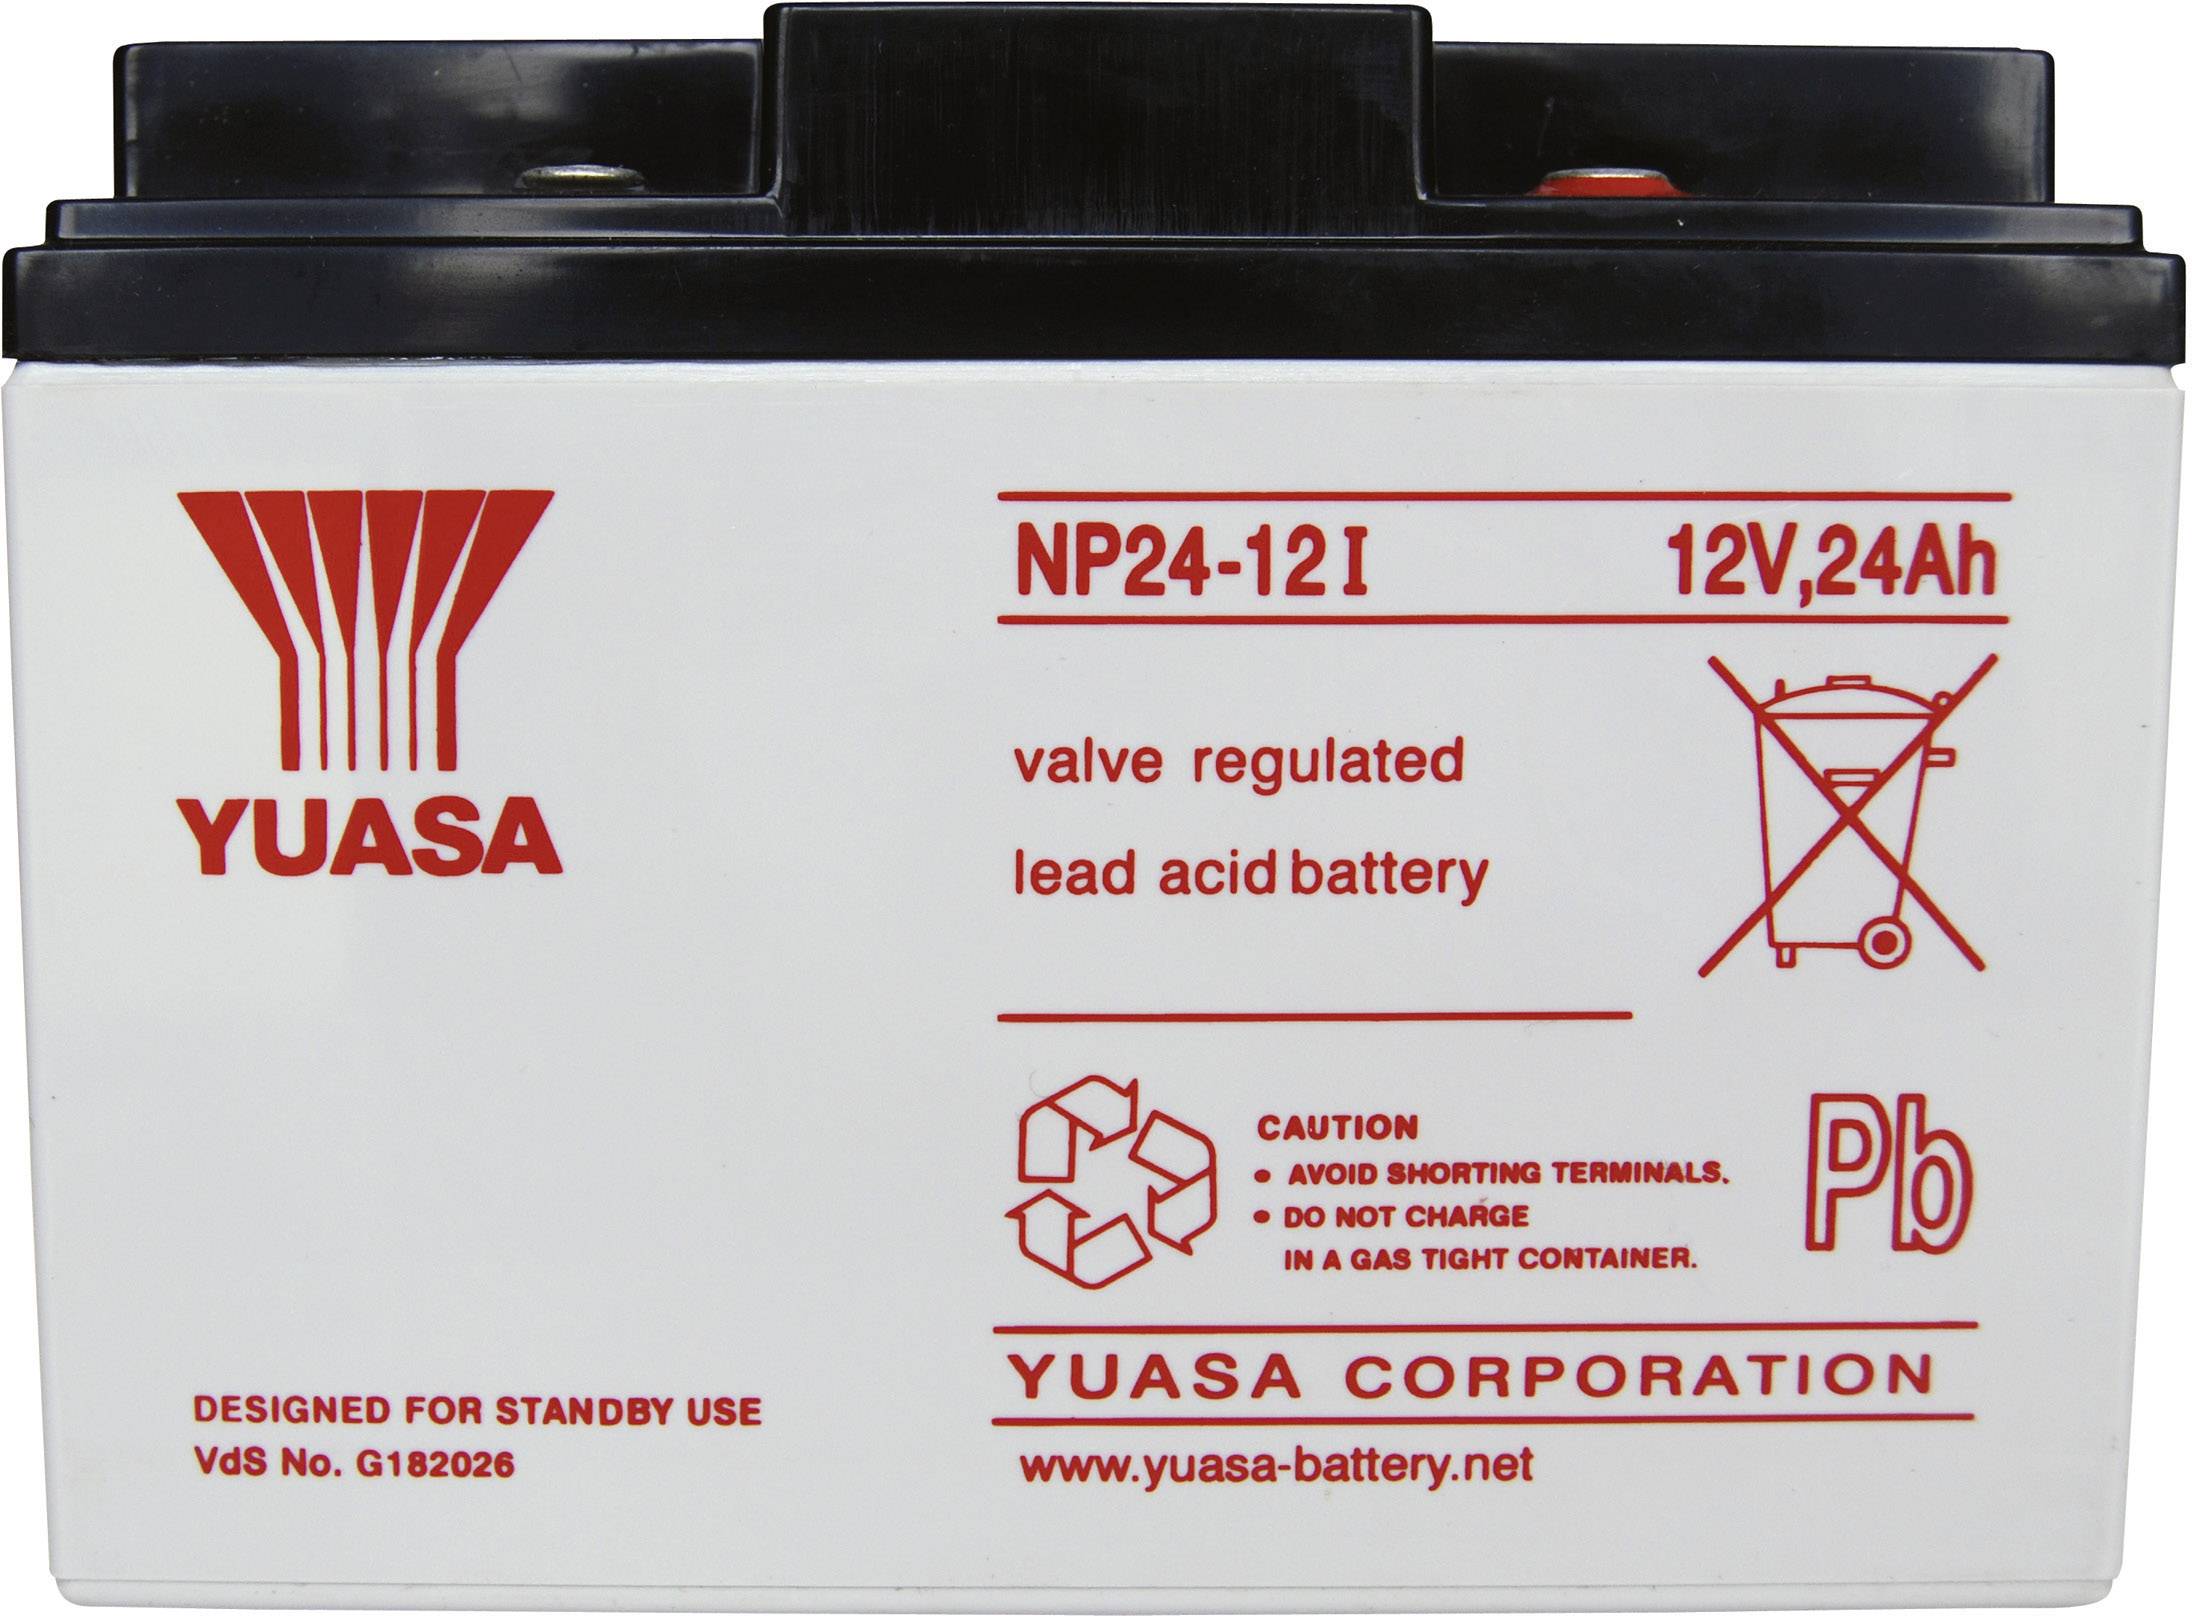 NP38-12 12 Volt 38.0Ah Yuasa NP Battery